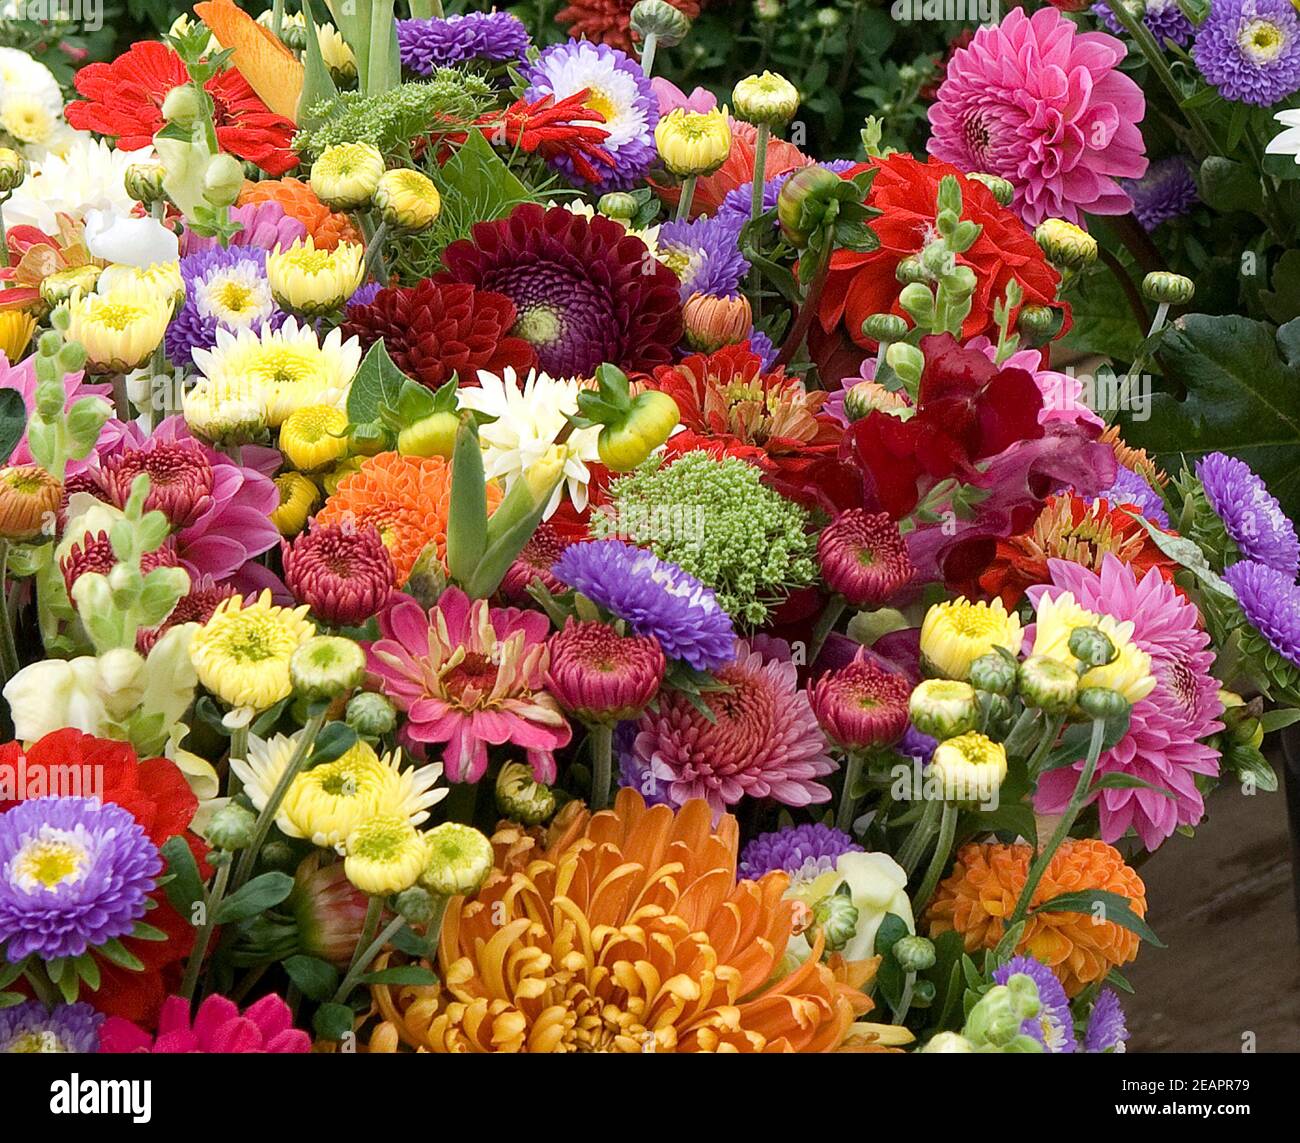 Blumenmarkt, Blumenstrauss Foto de stock